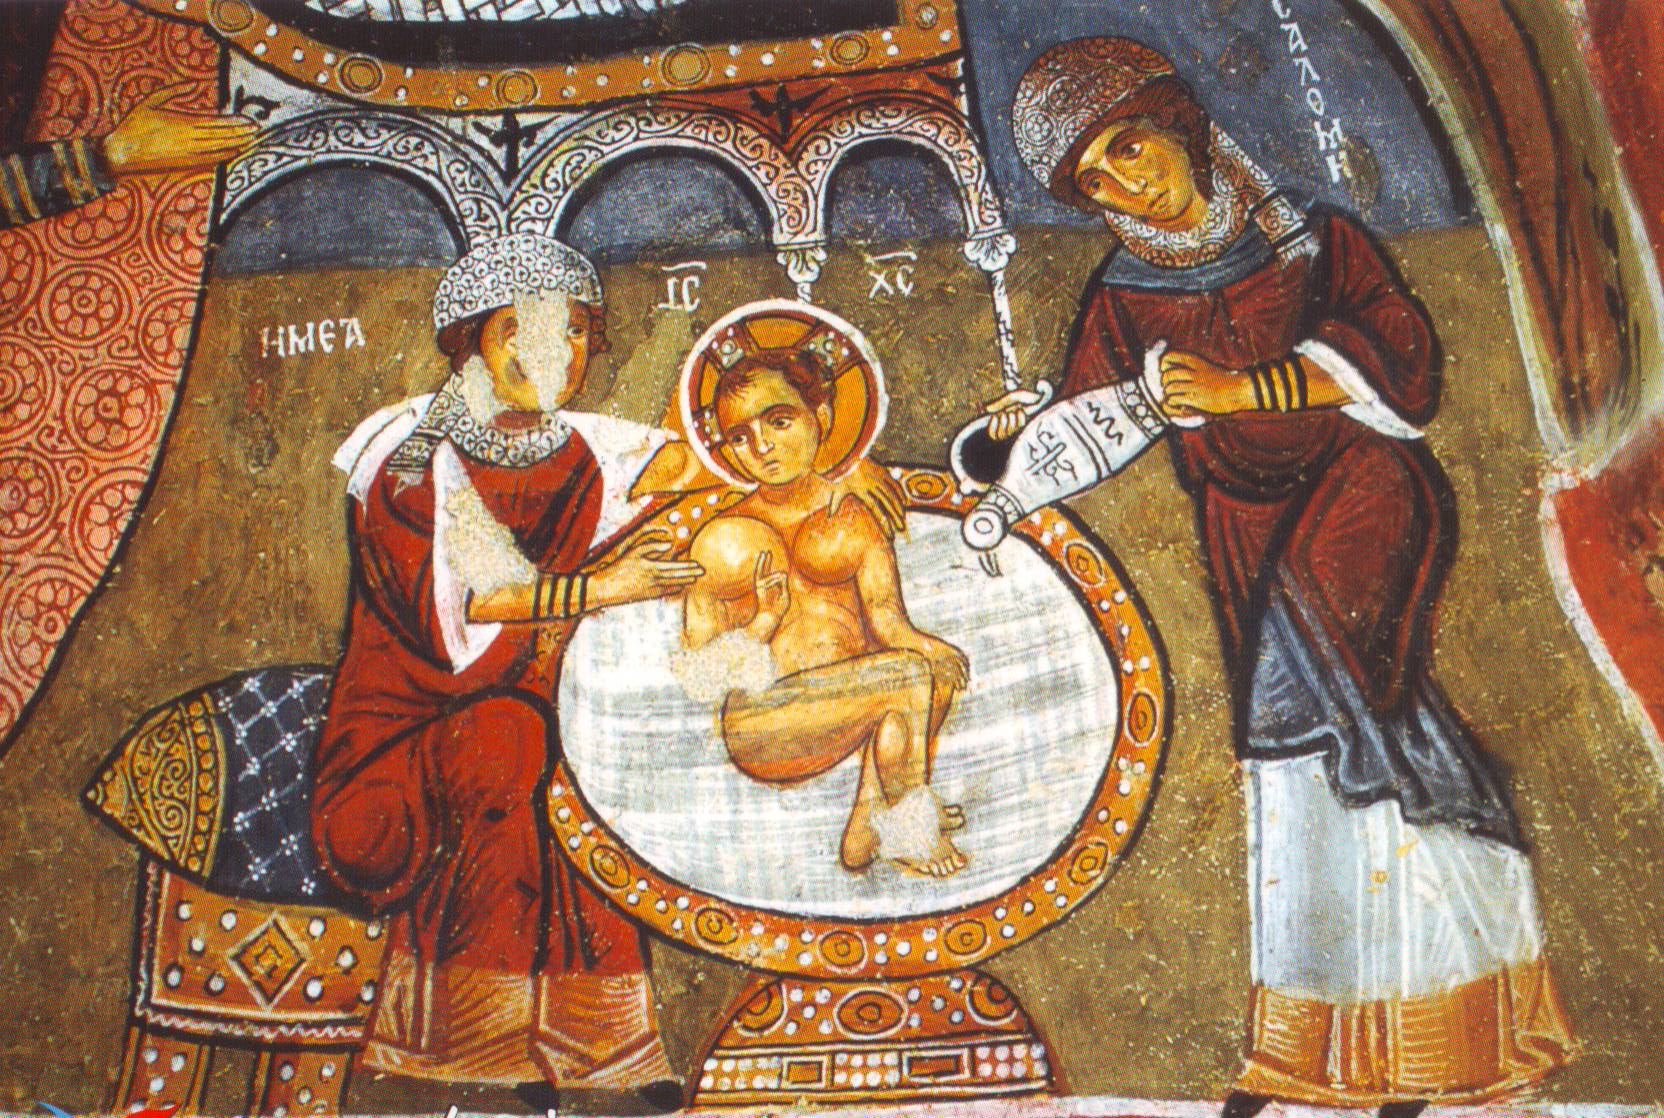 سالومي (يمين) والقابلة "إيميا" (يسار)، تحميم الطفل يسوع، وهي شخصية شائعة في الأيقونات الأرثوذكسية لميلاد يسوع؛ هنا في لوحة جدارية من القرن الثاني عشر من كابادوكيا.